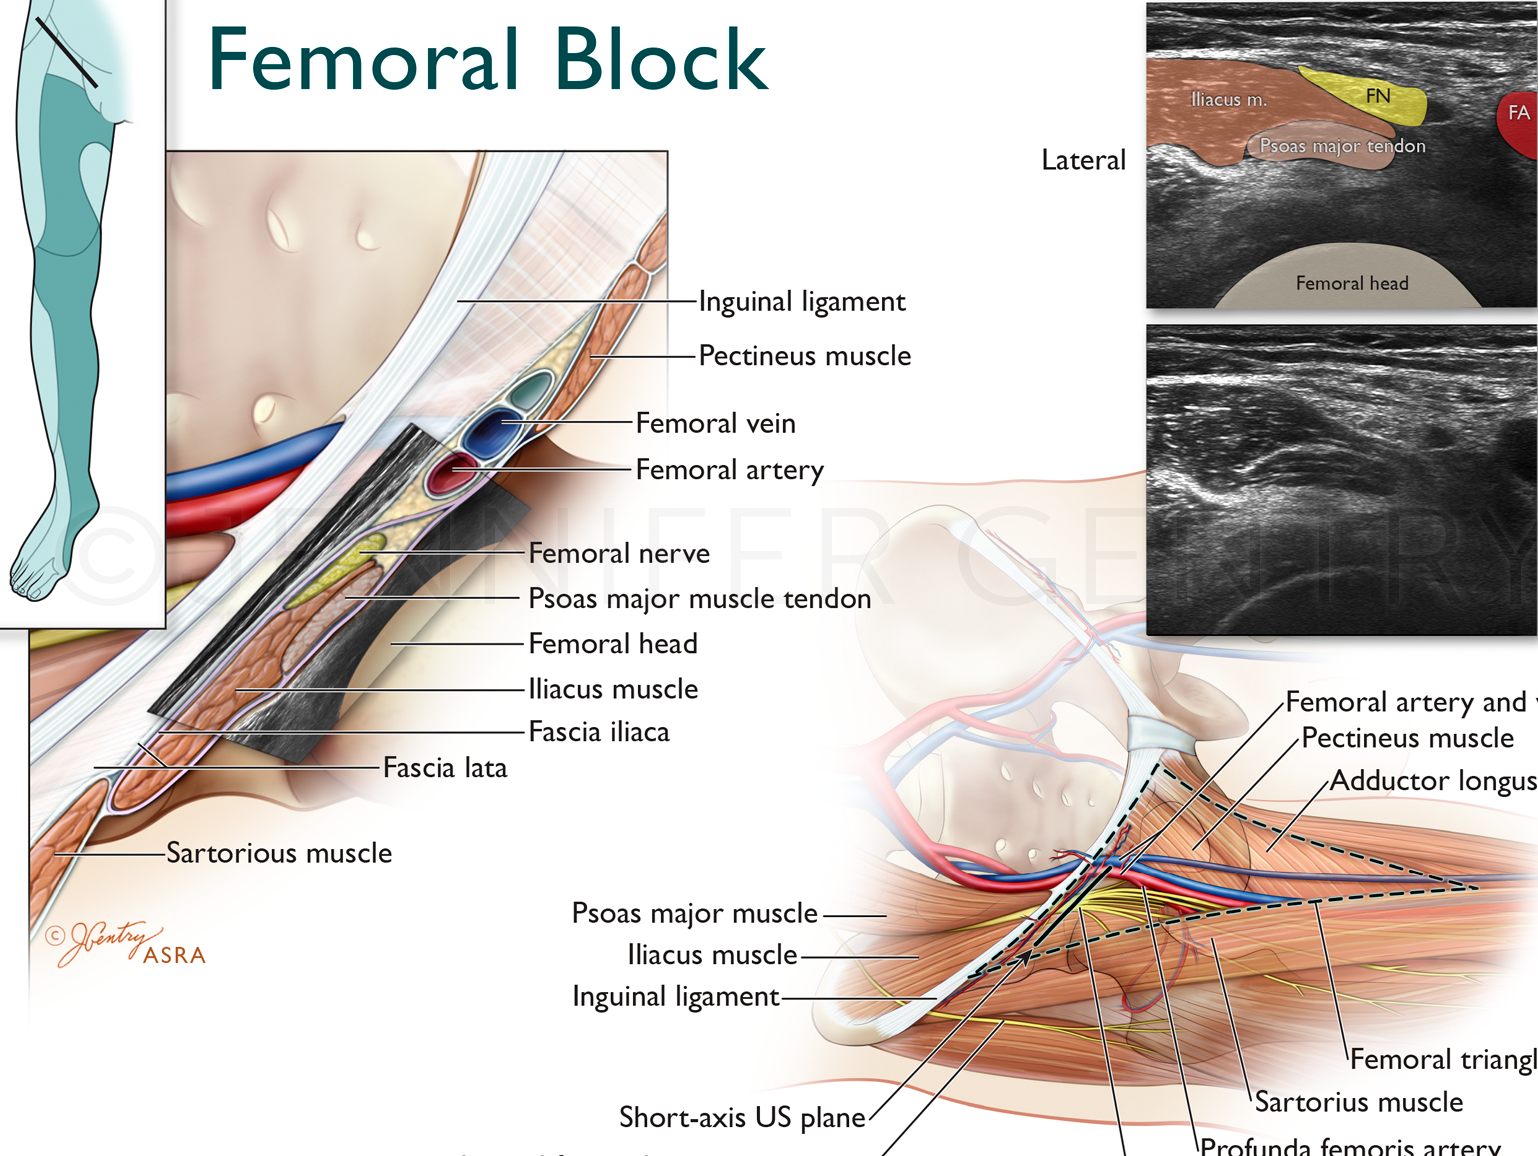 femoral nerve block